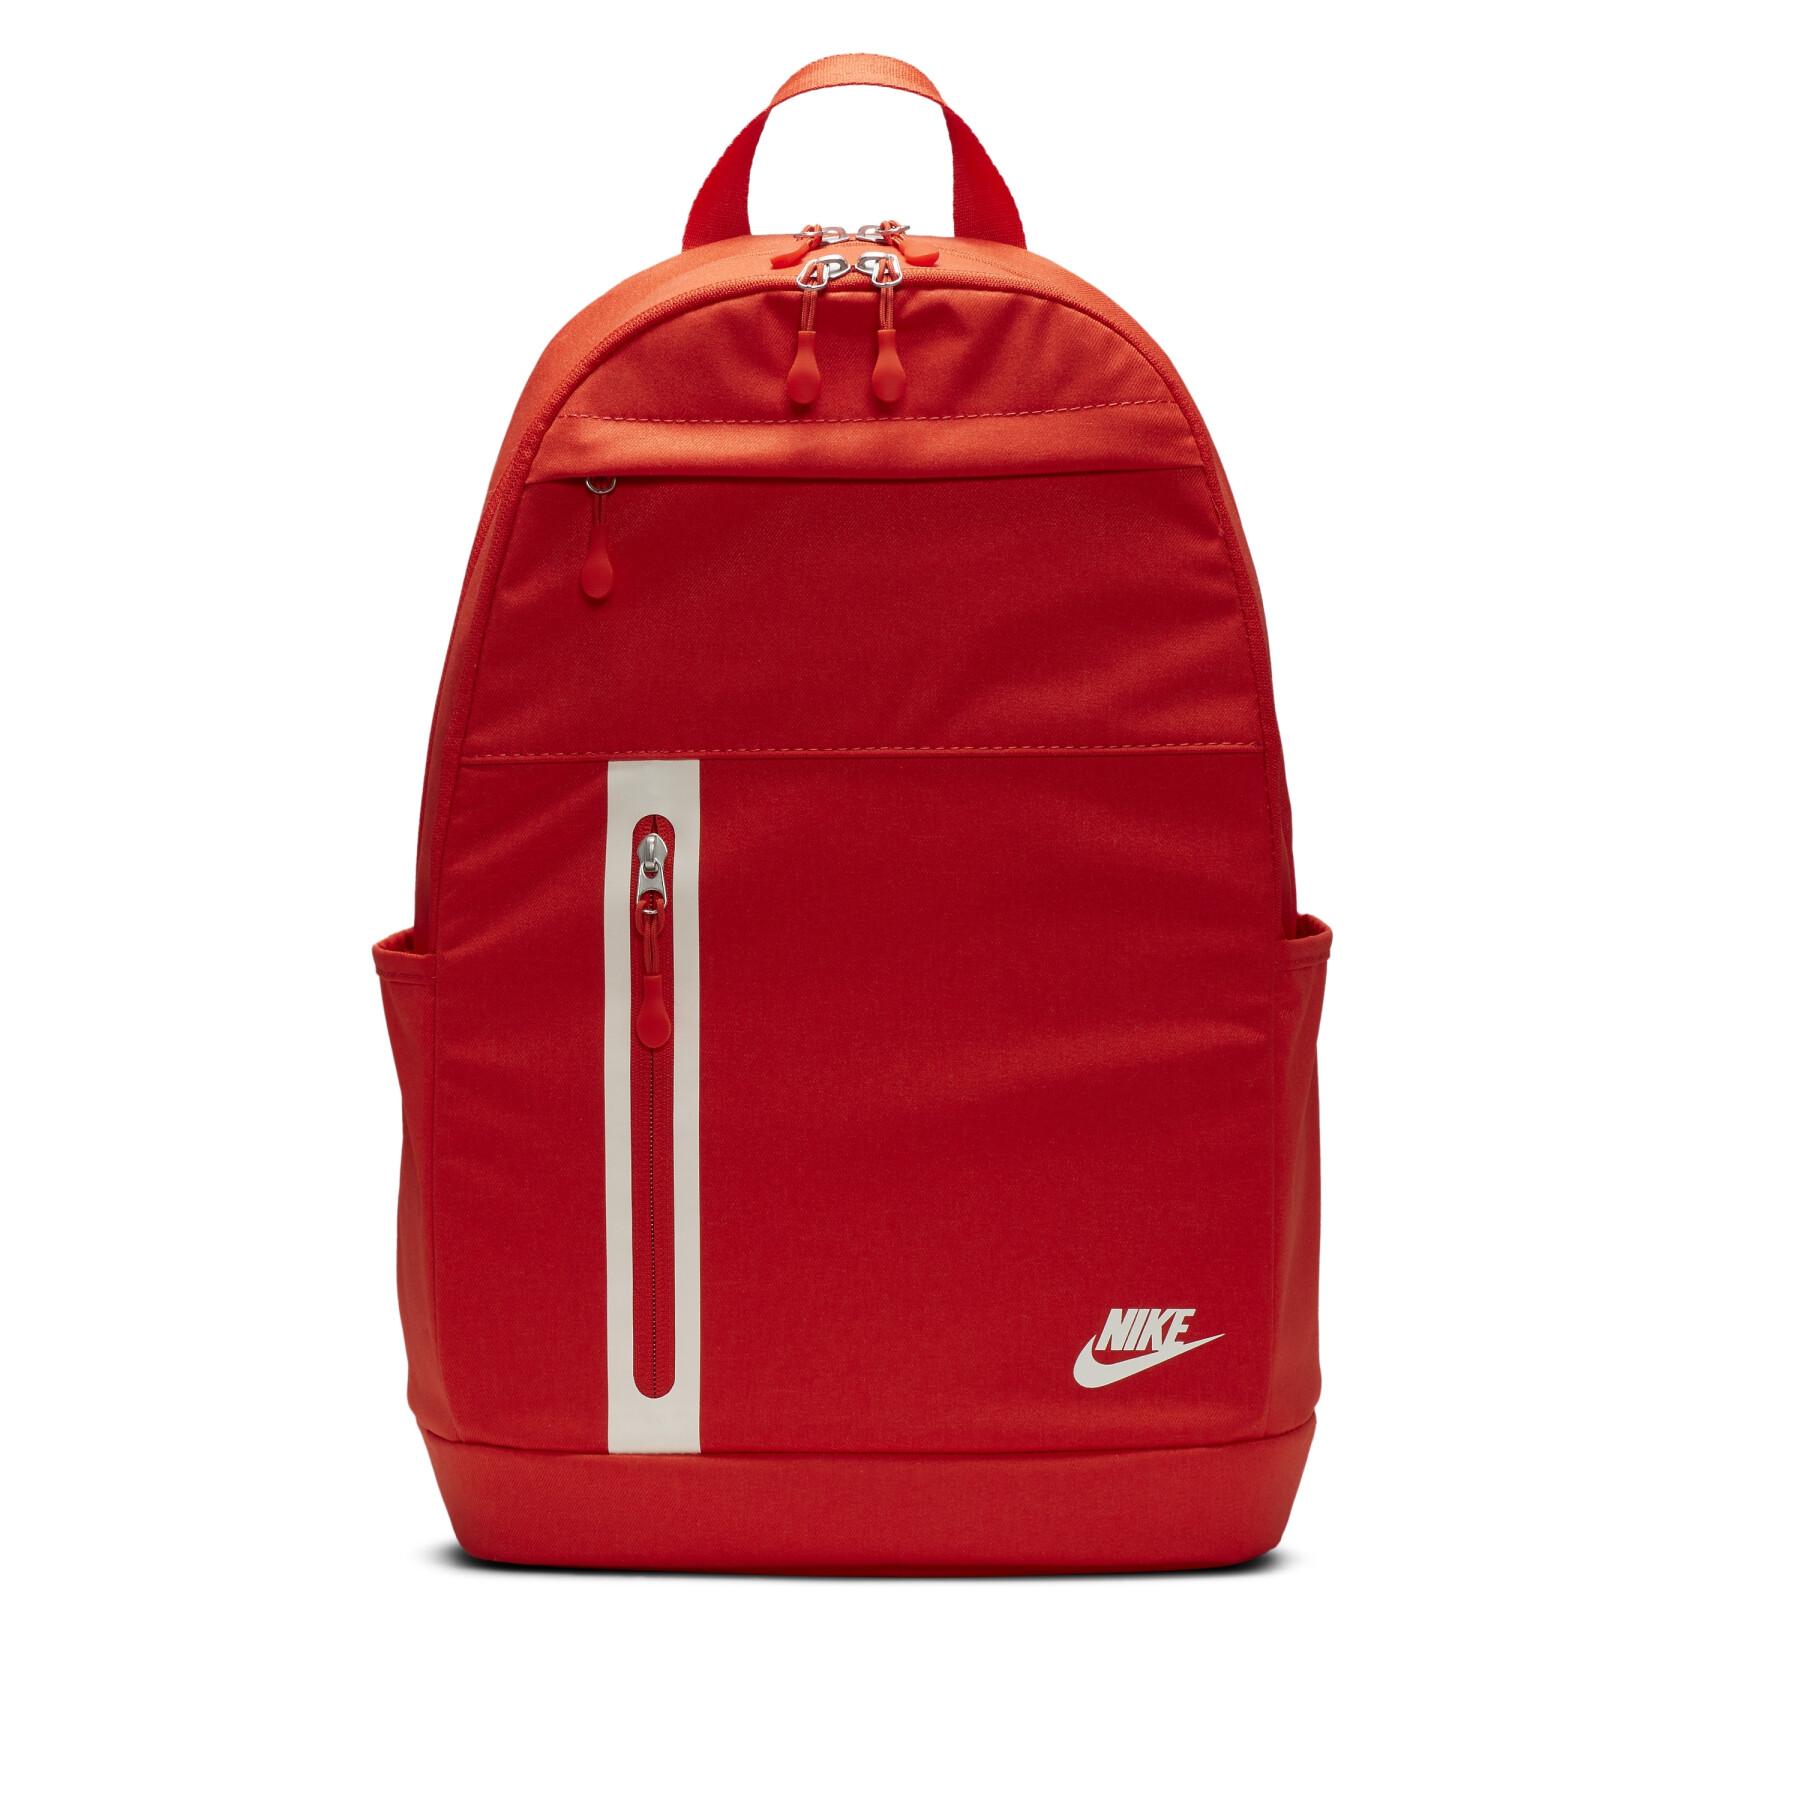 Backpack Nike Elemental premium